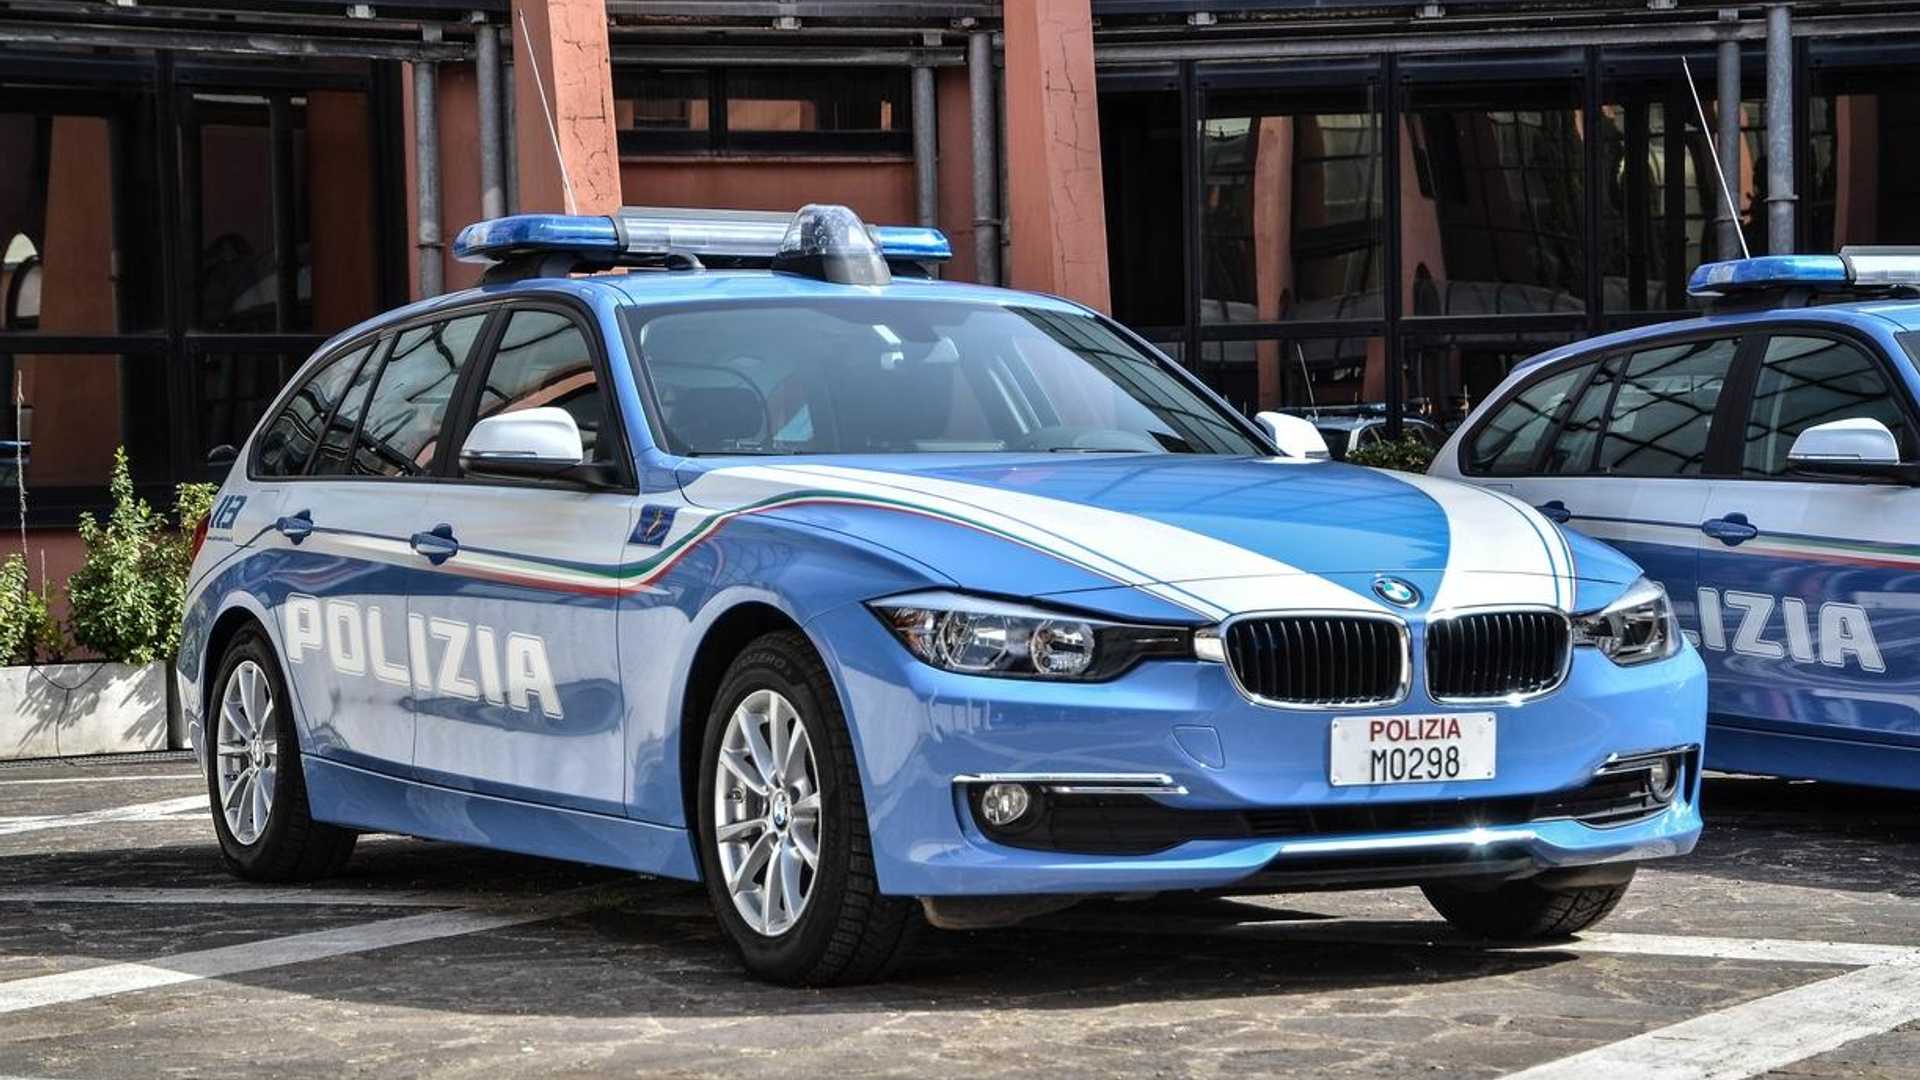 Полицейская машина другая. 143 Модели BMW 320 D Touring 2003 polizia. Polizia Stradale знак. Автомобили полиции Италии. Итальянская Полицейская машина.